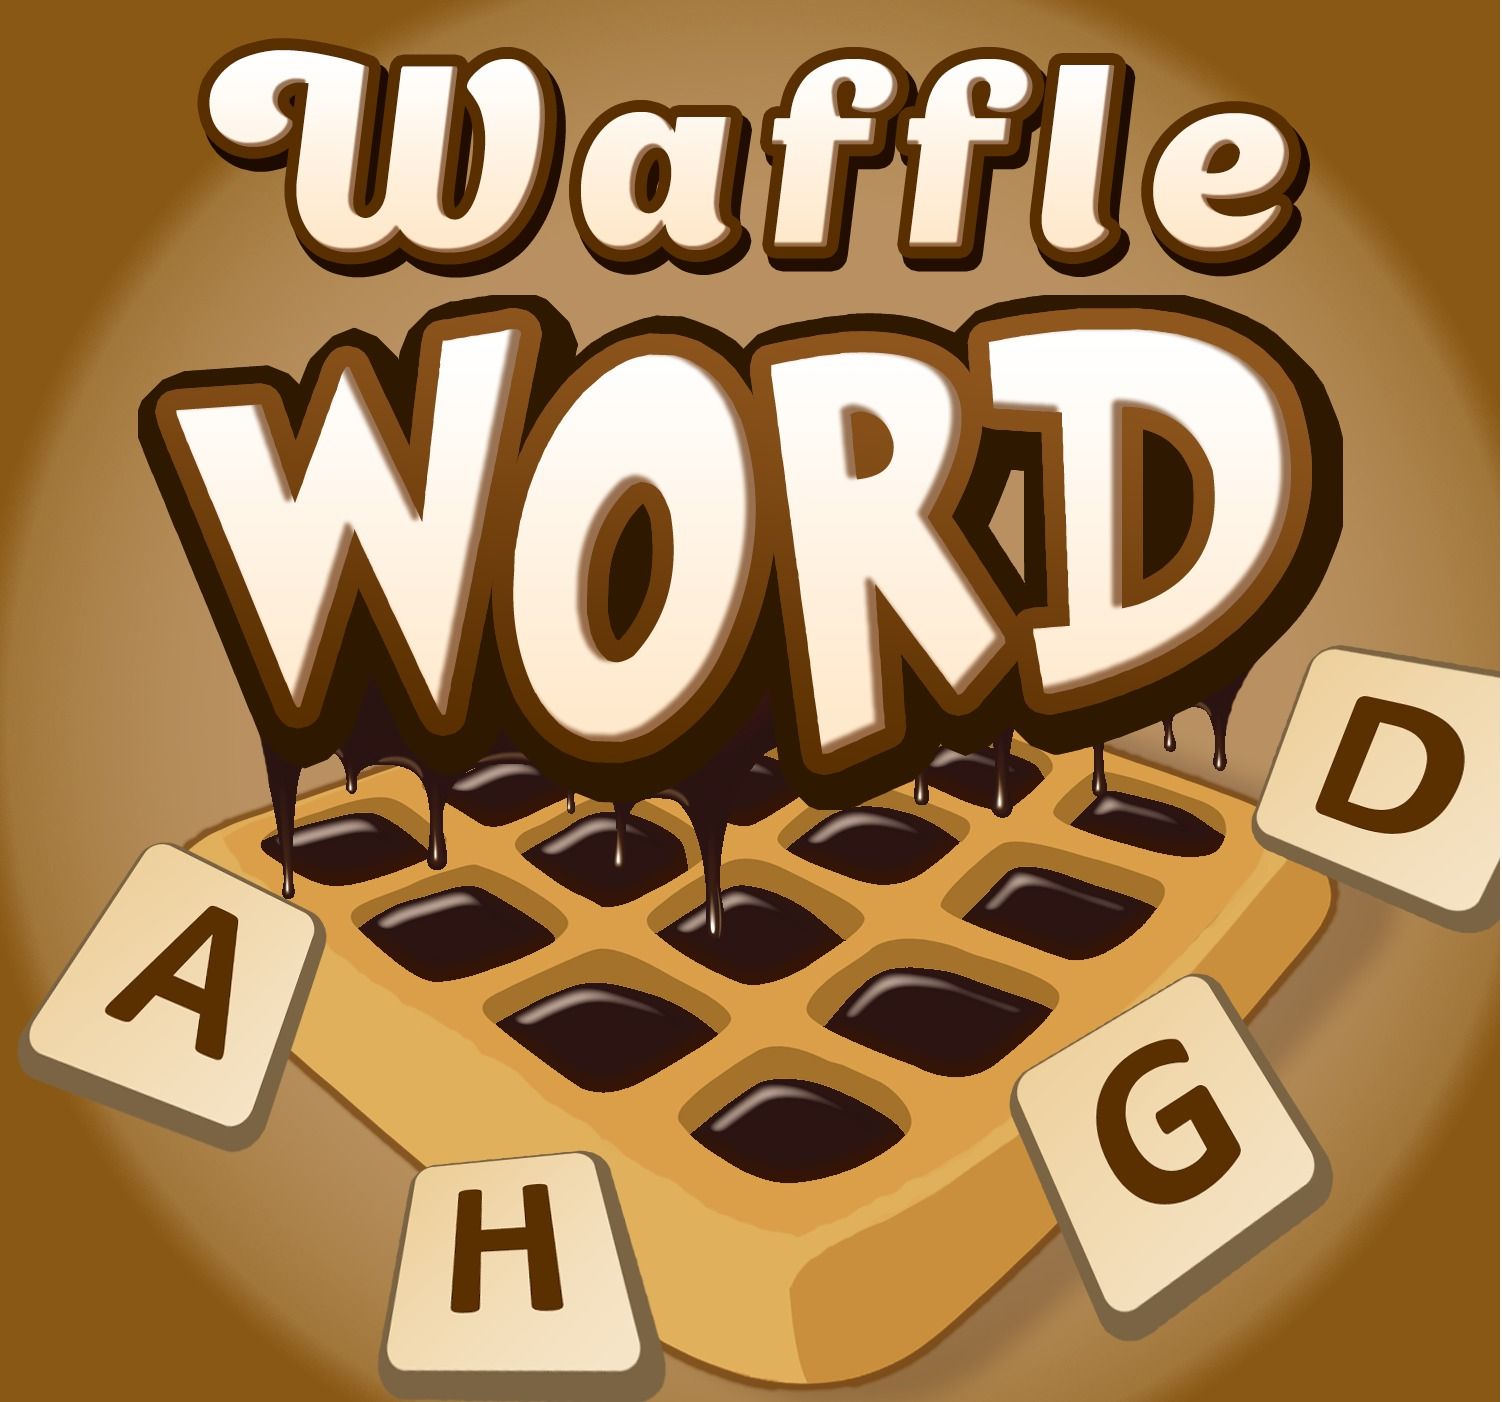 Waffle Word